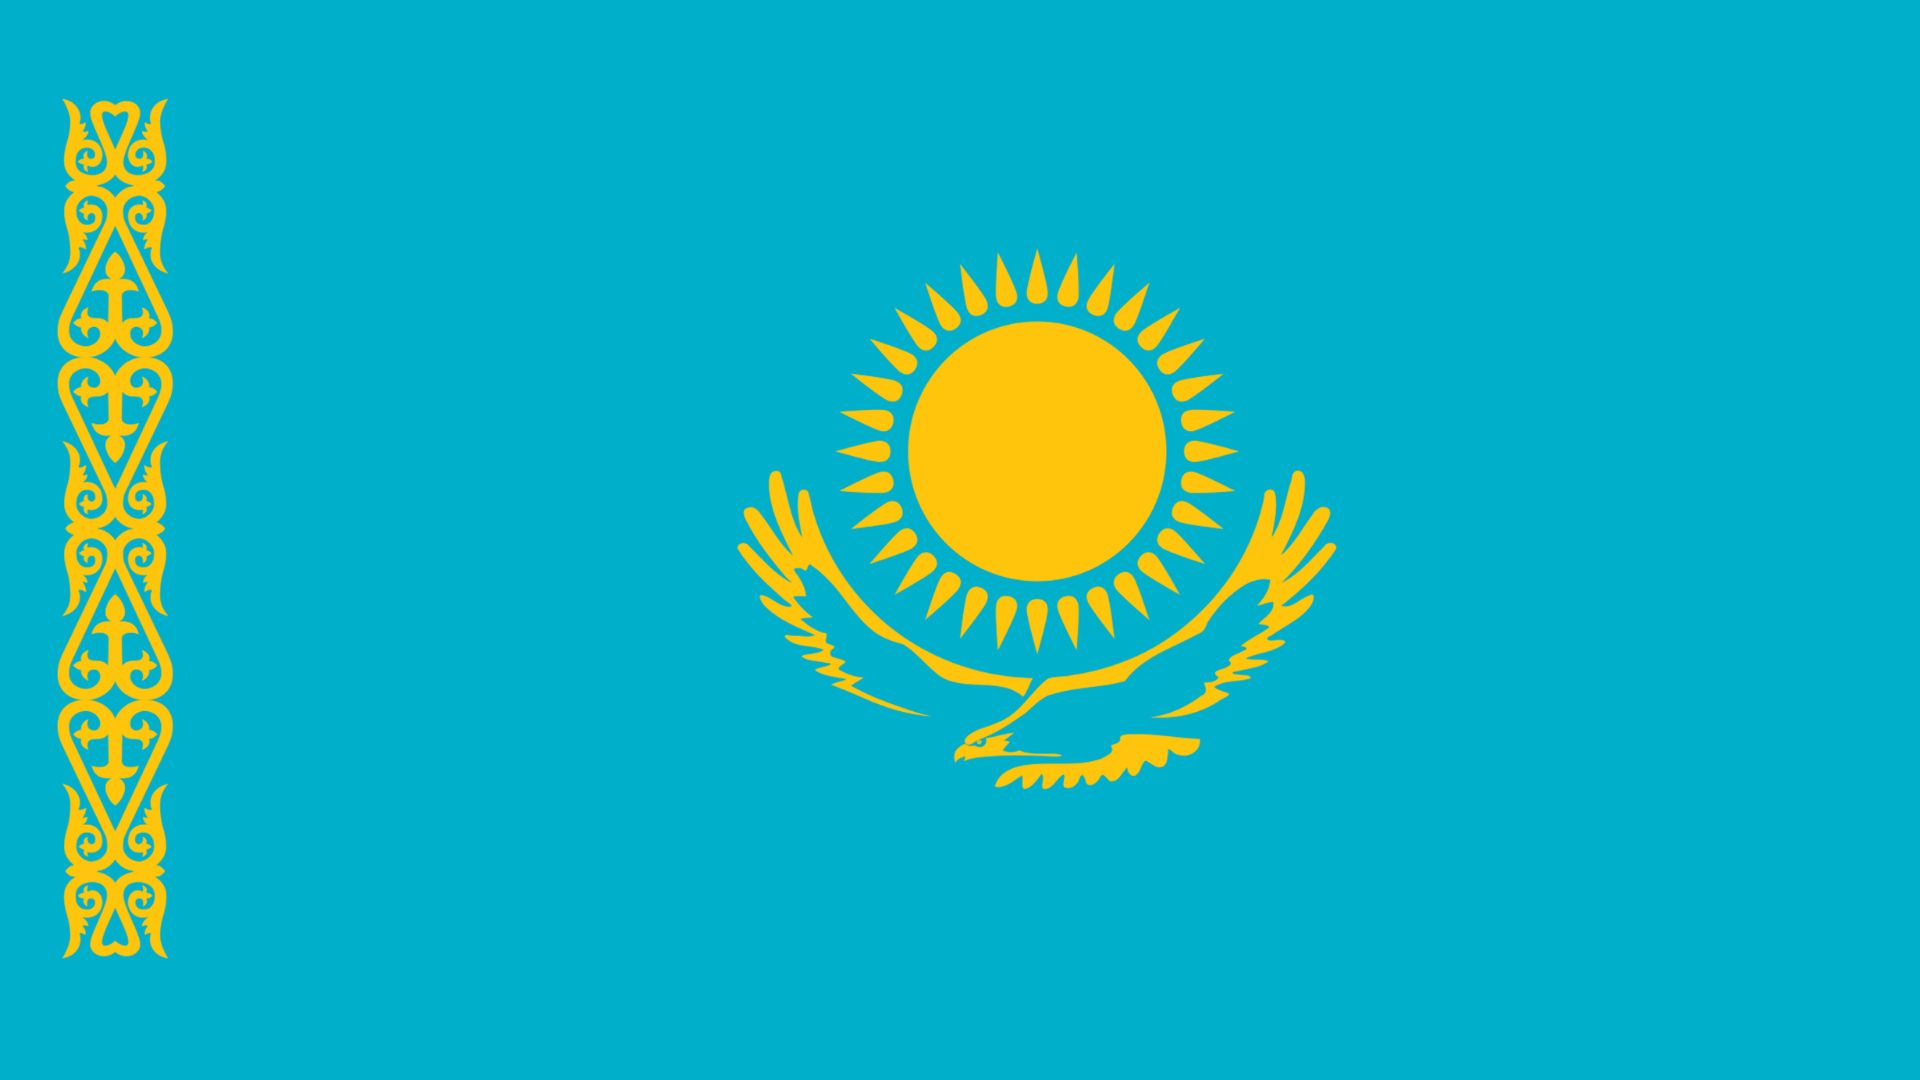 A bandeira do Cazaquistão consiste de um fundo de cor azul-celeste com uma águia e um sol dourado cercado por 32 raios ao centro.